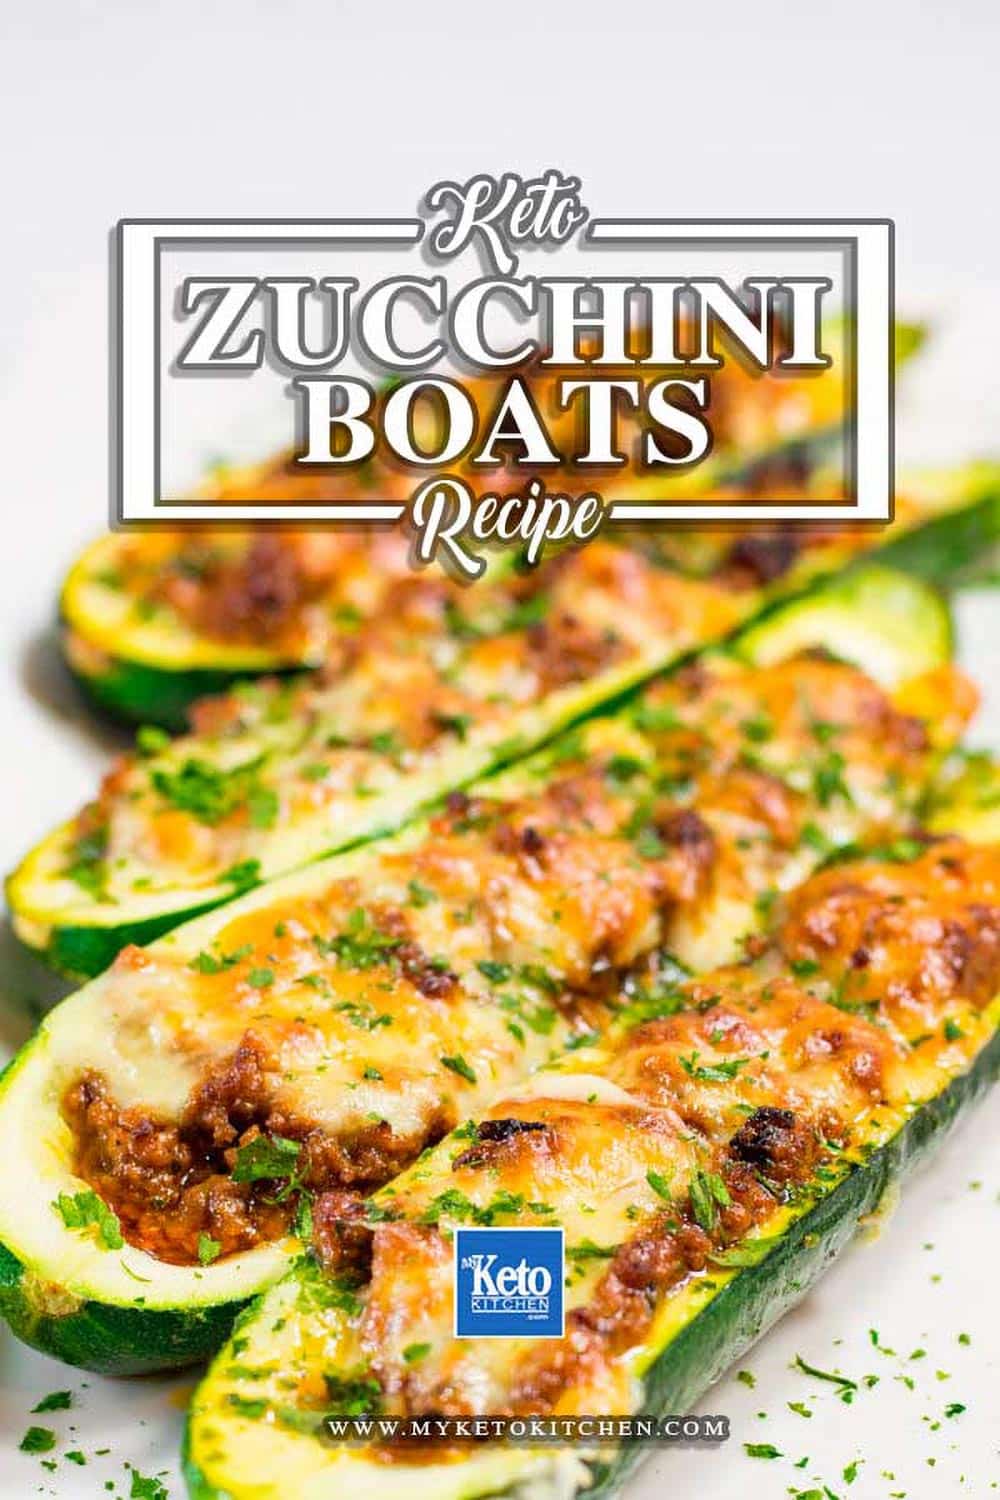 Easy Keto Zucchini Boats Recipe - Delicious!